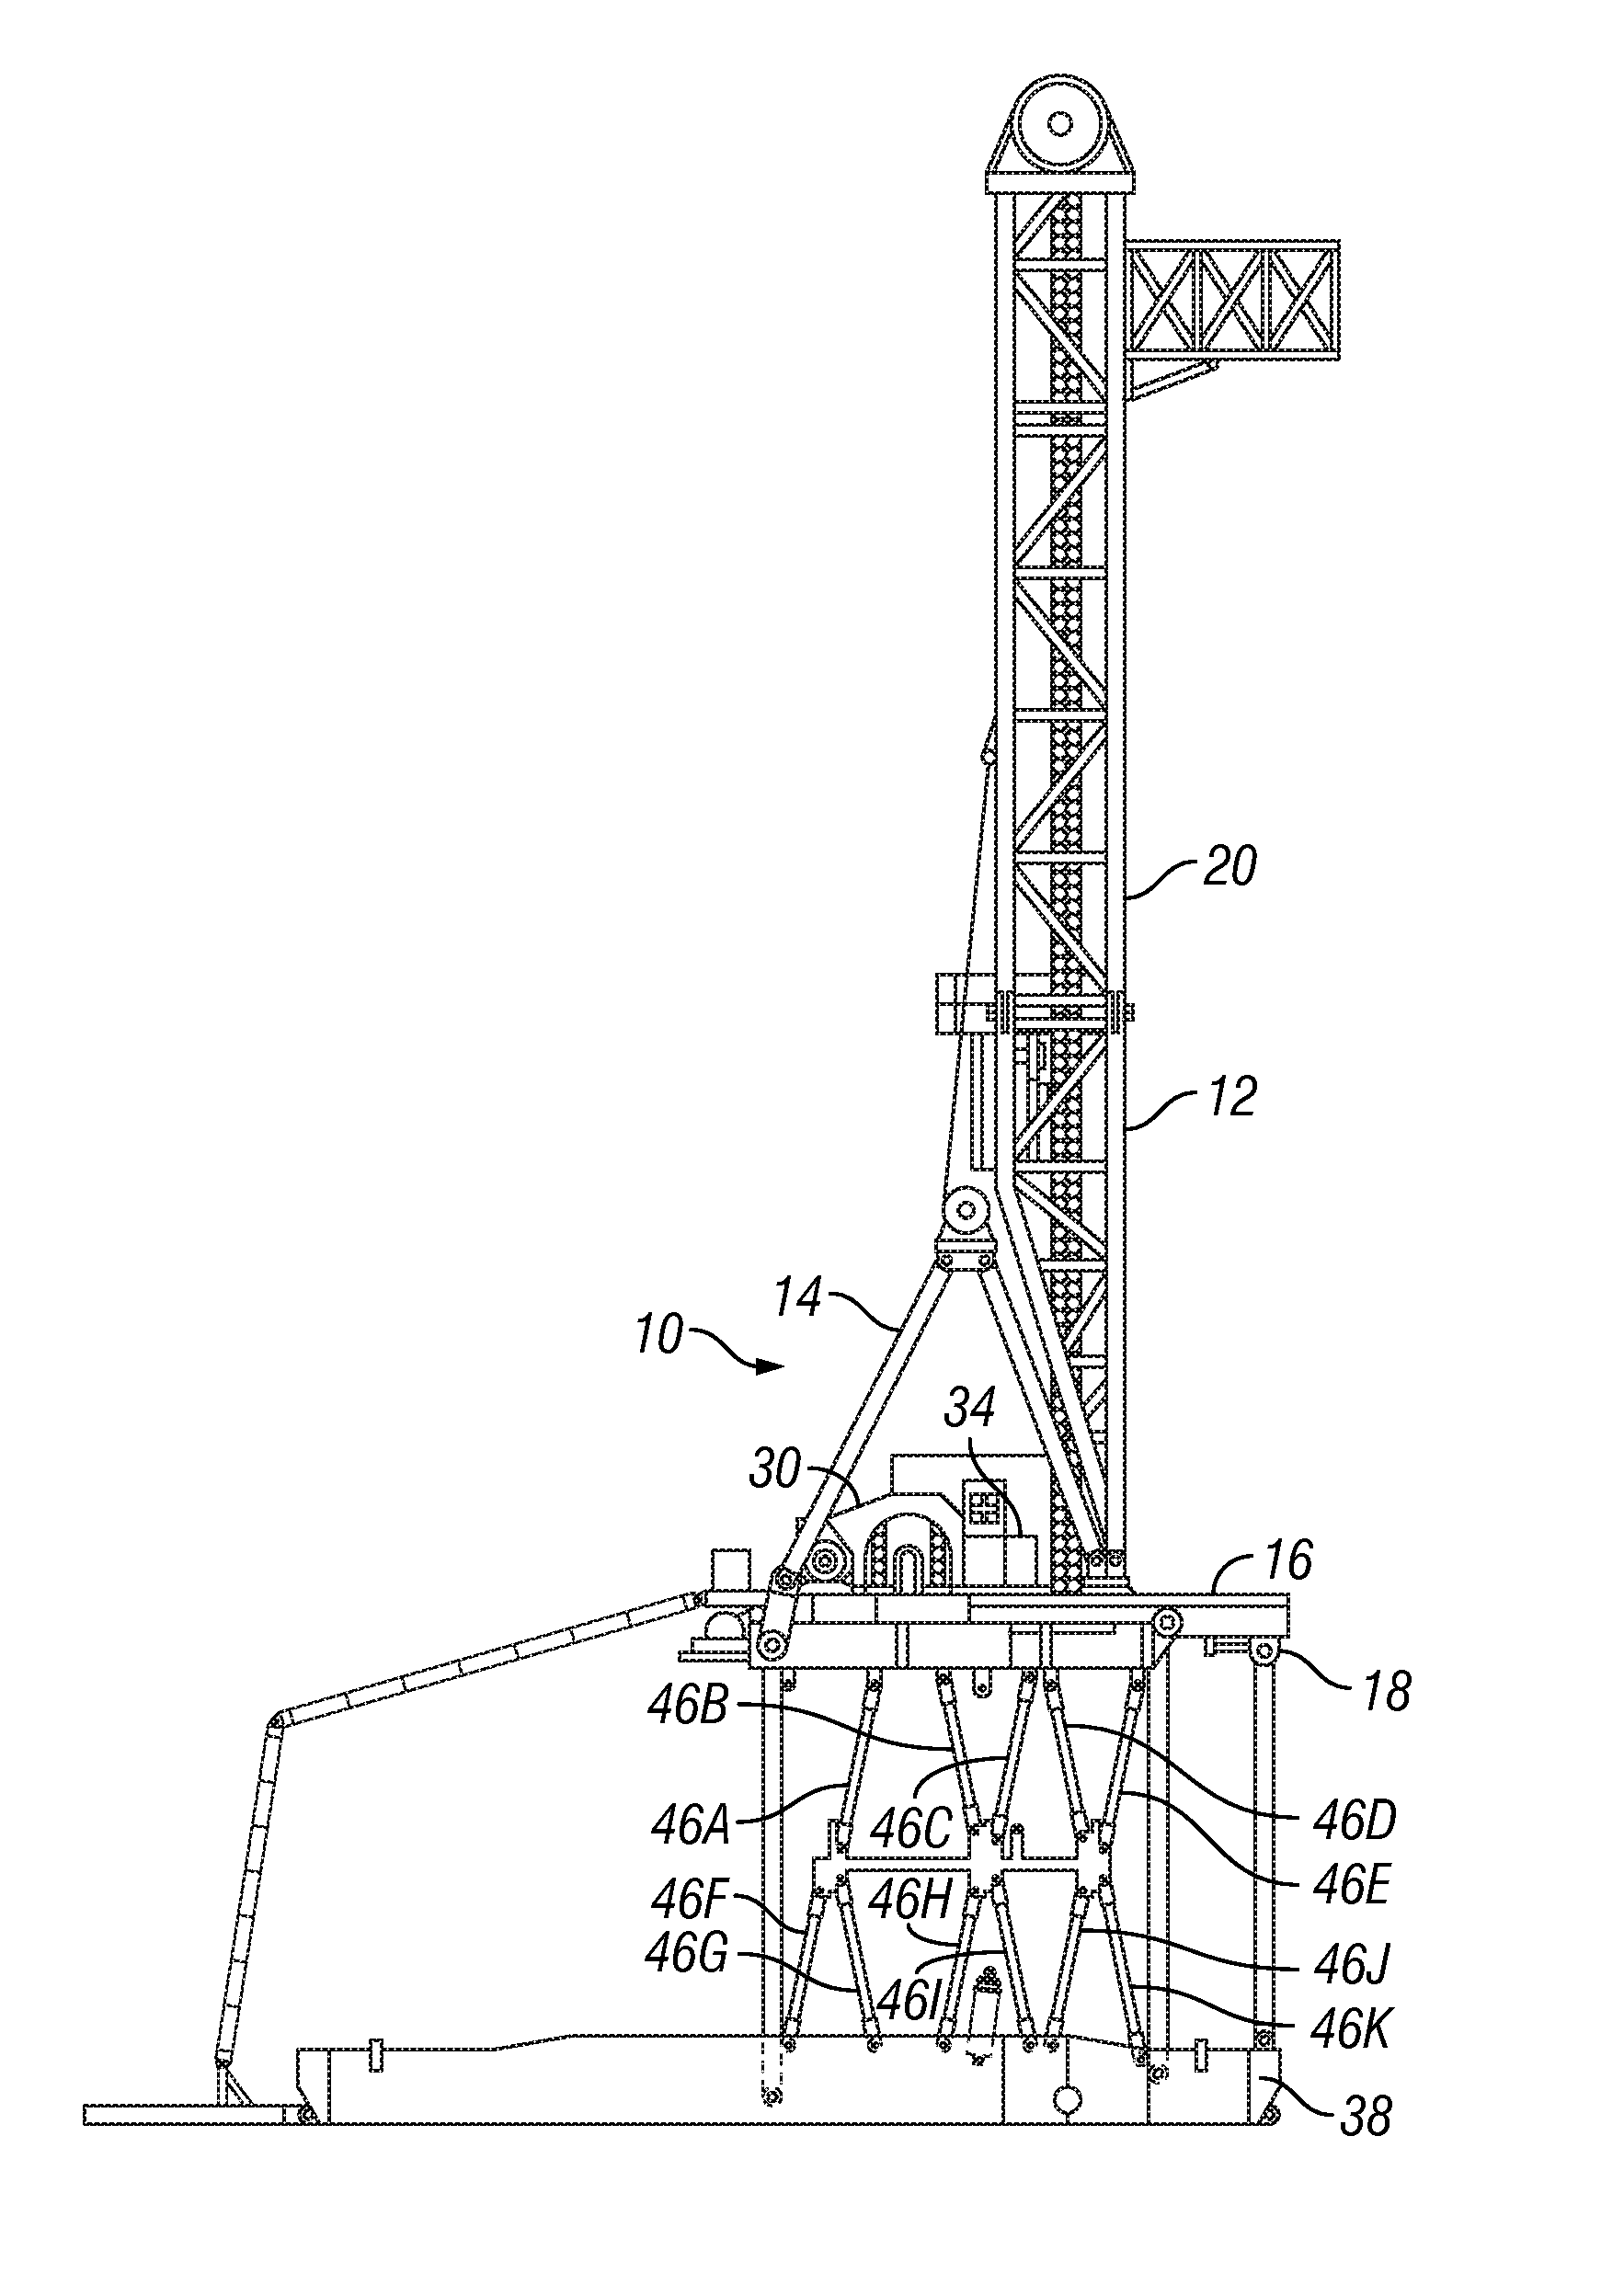 Split sub-basement drill rig